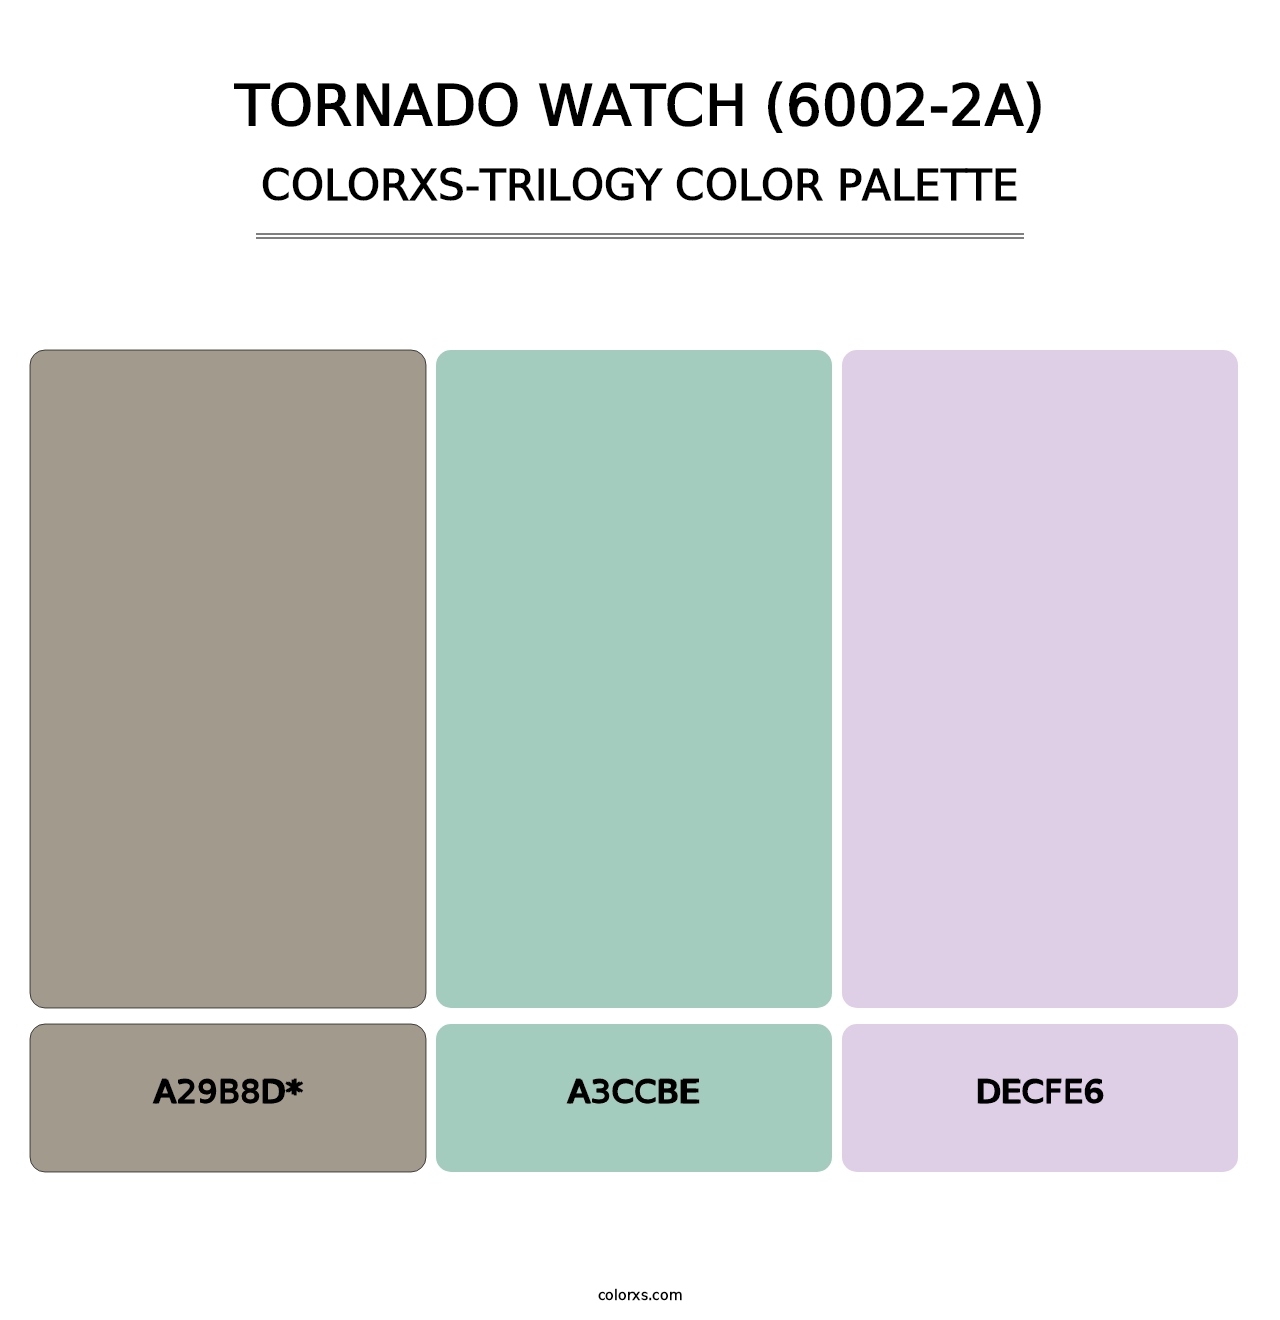 Tornado Watch (6002-2A) - Colorxs Trilogy Palette